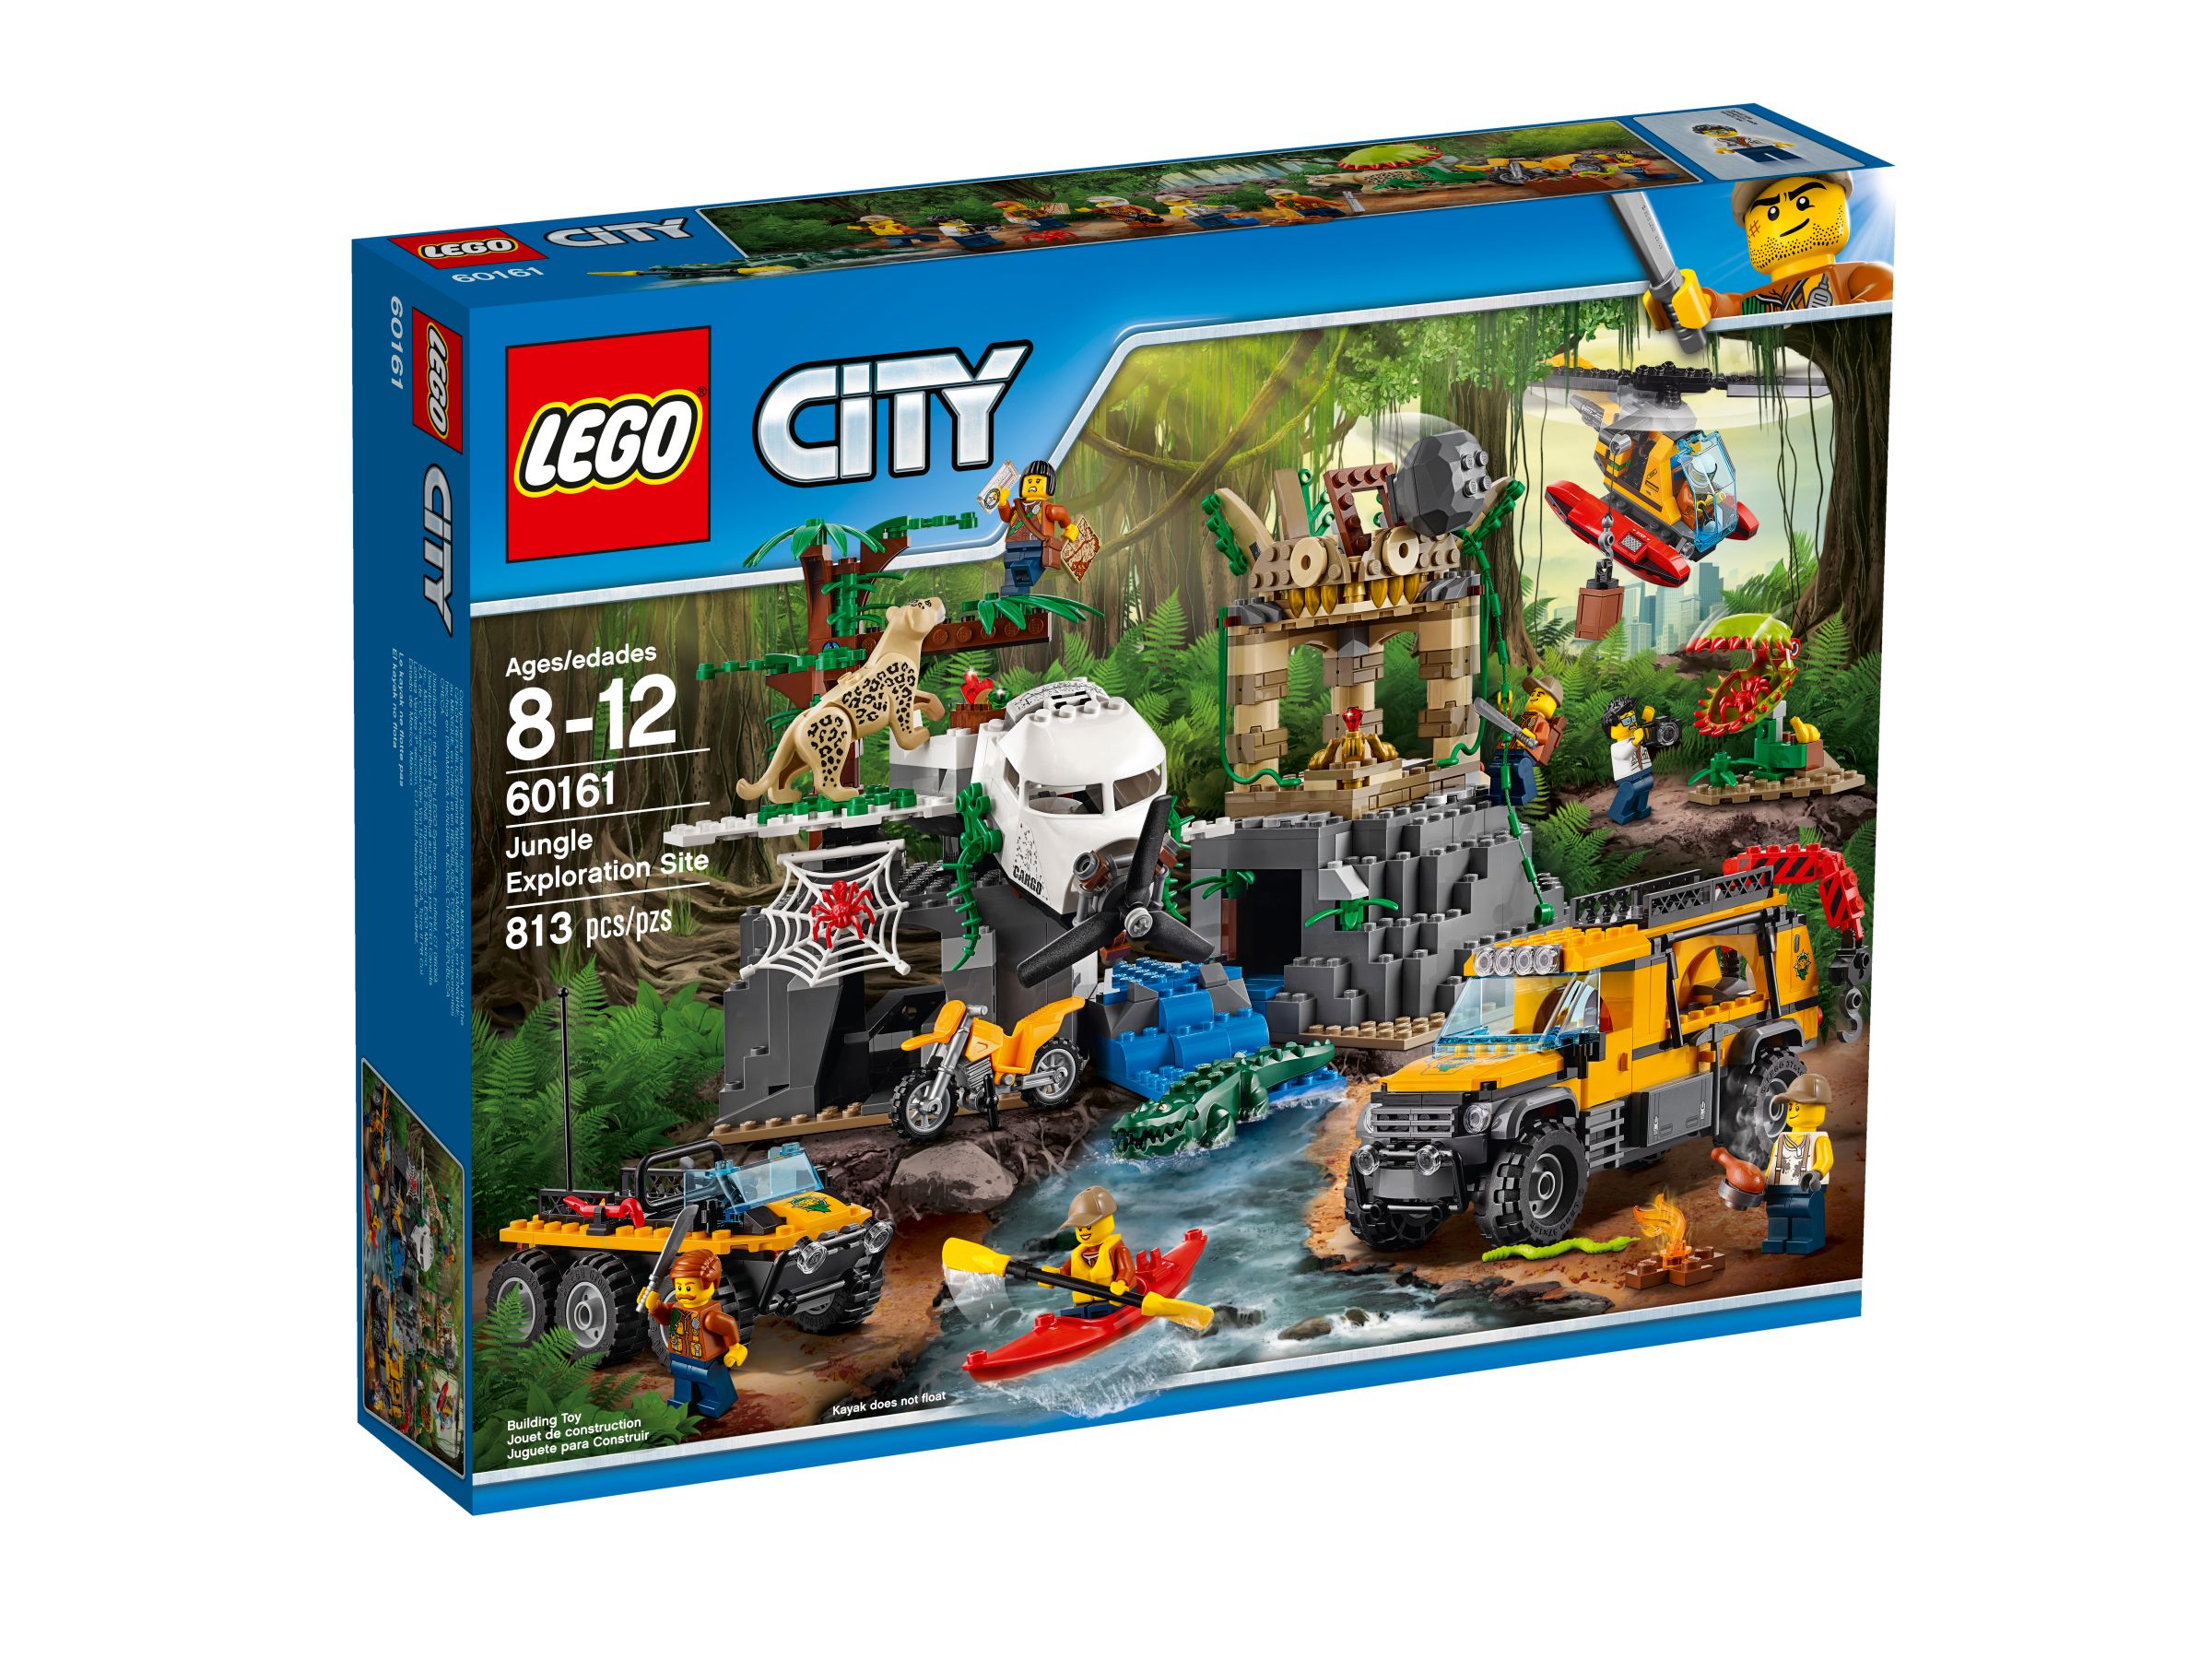 LEGO City 60161 Dschungel-Forschungsstation LEGO_60161_alt1.jpg